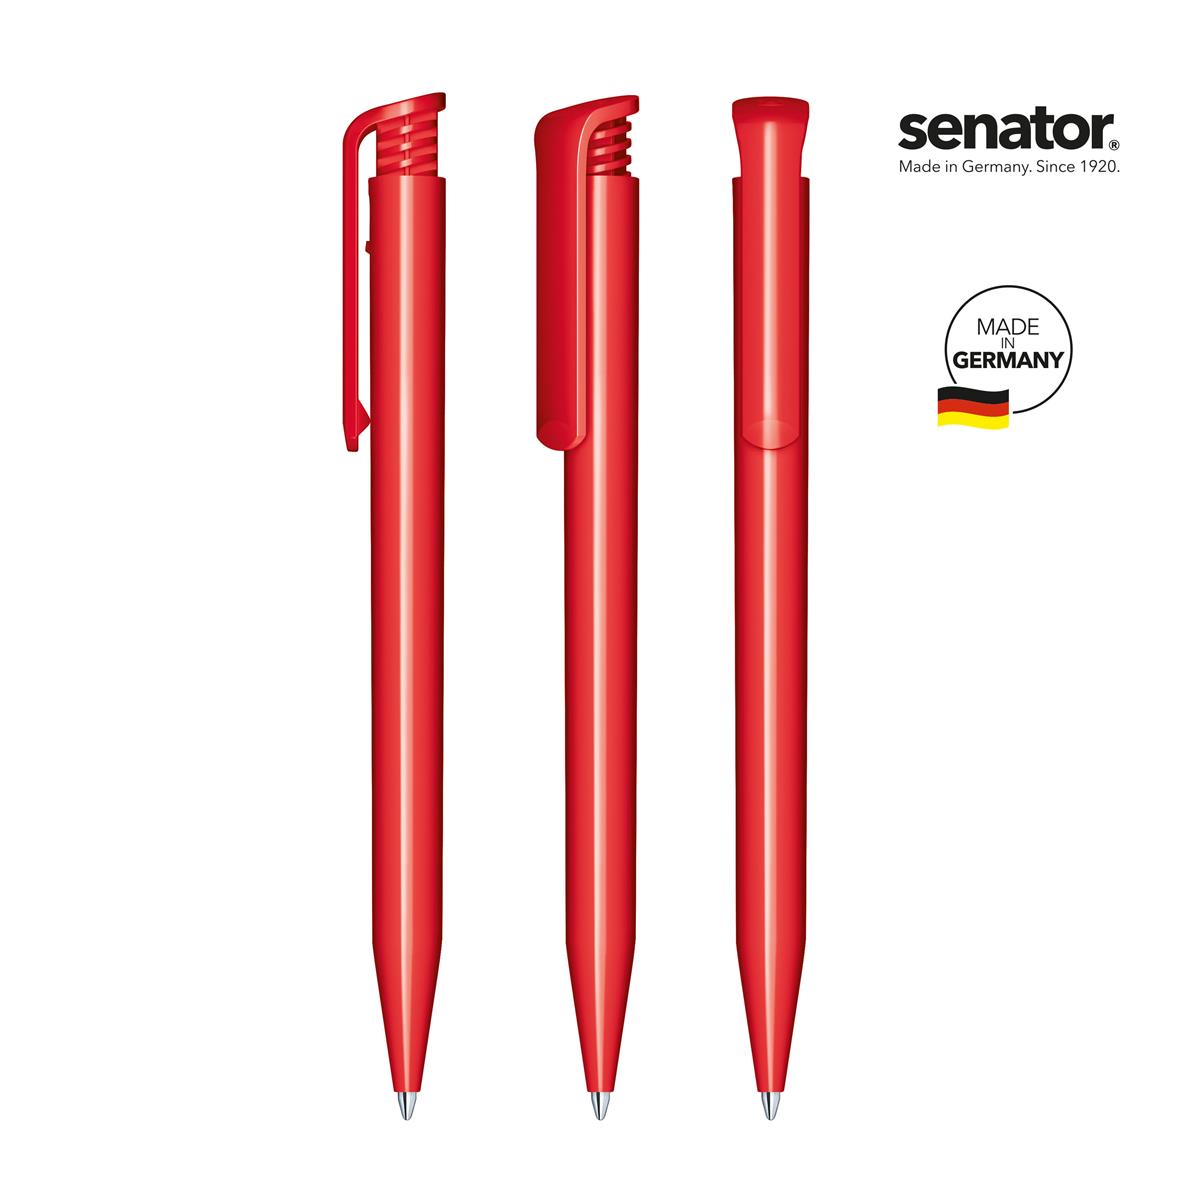 2883-senator-super-hit-polished-pms-186-5-p